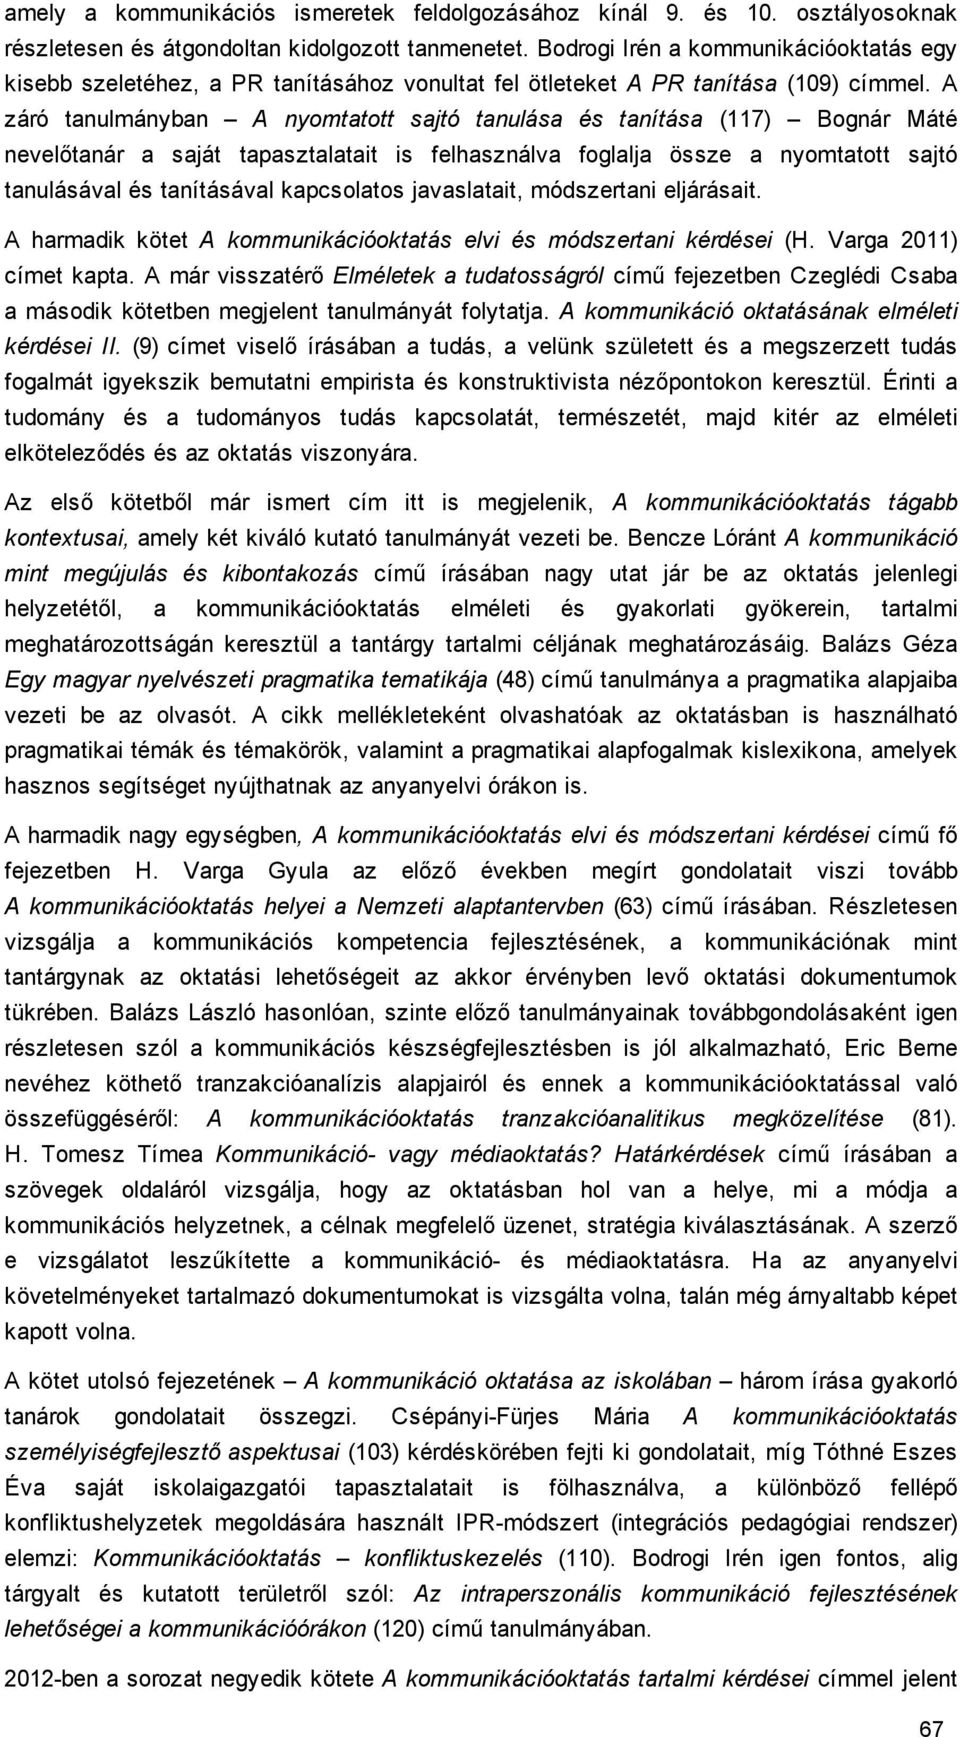 A záró tanulmányban A nyomtatott sajtó tanulása és tanítása (117) Bognár Máté nevelőtanár a saját tapasztalatait is felhasználva foglalja össze a nyomtatott sajtó tanulásával és tanításával